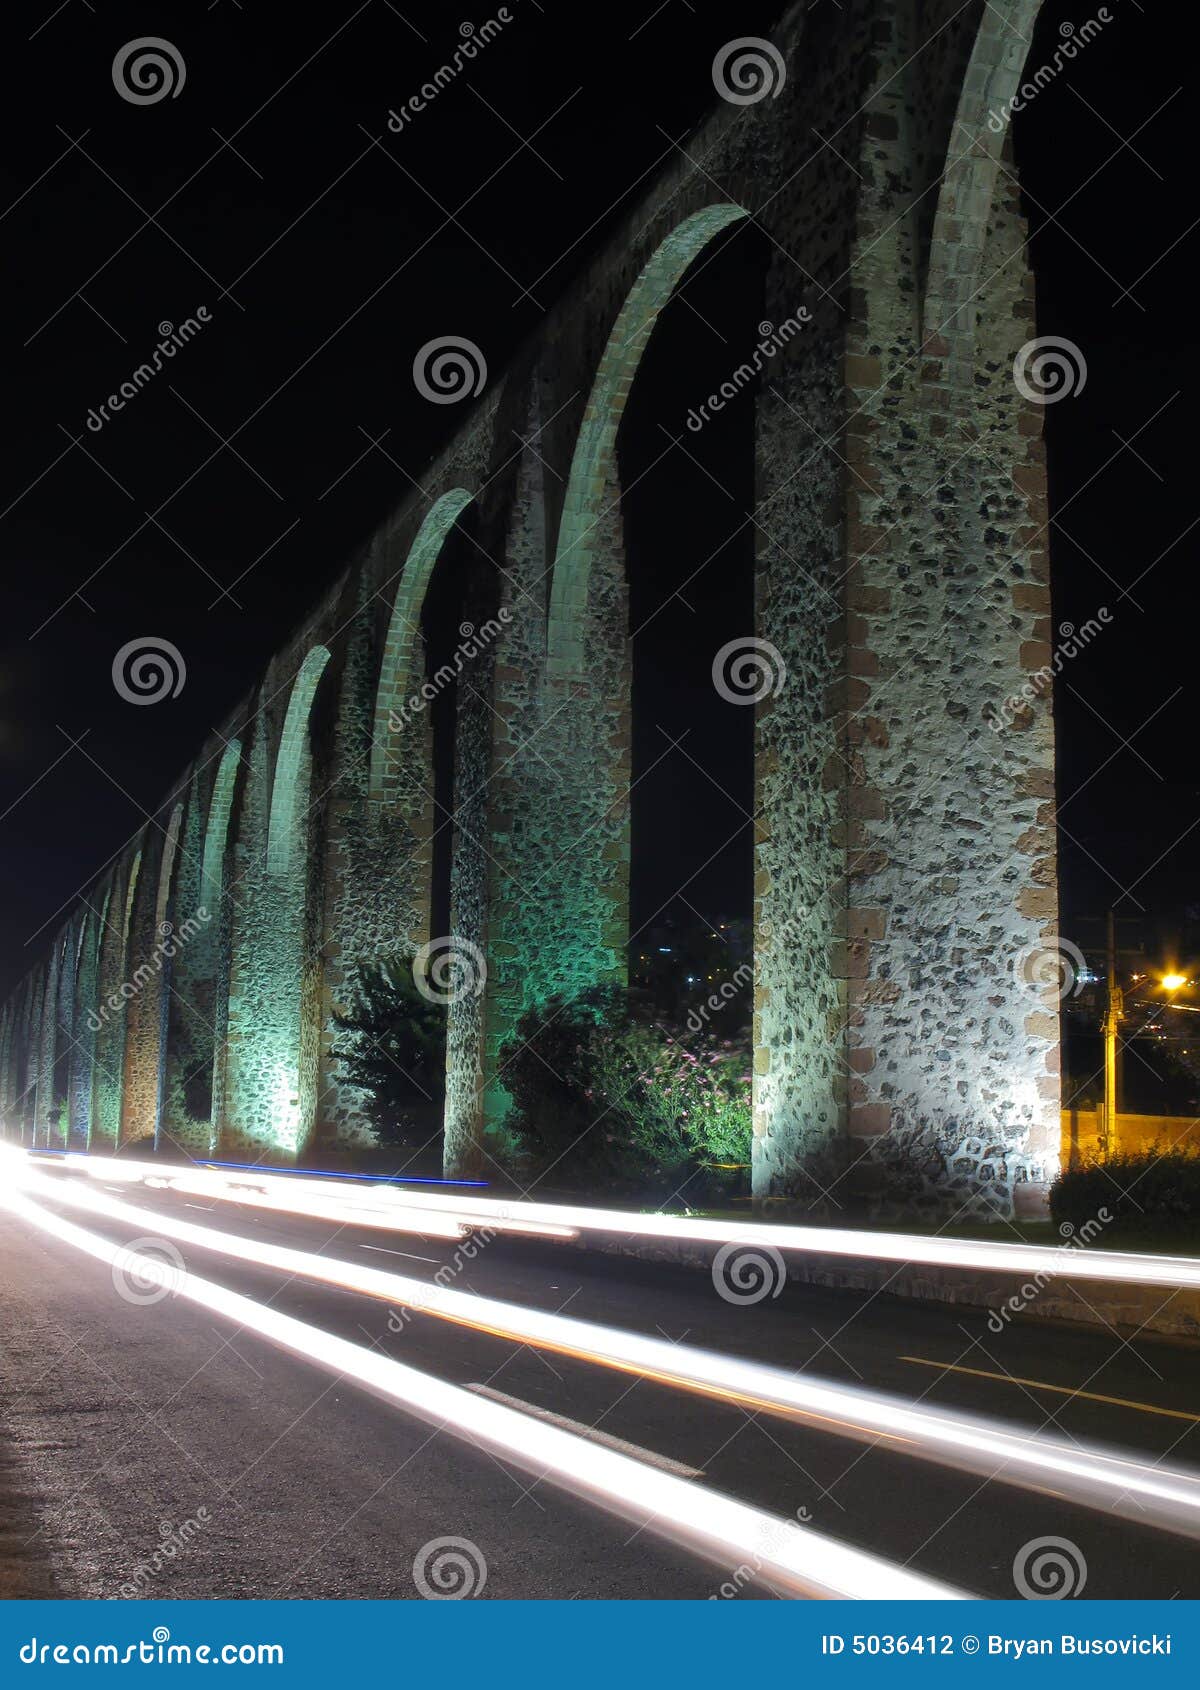 queretaro aqueduct